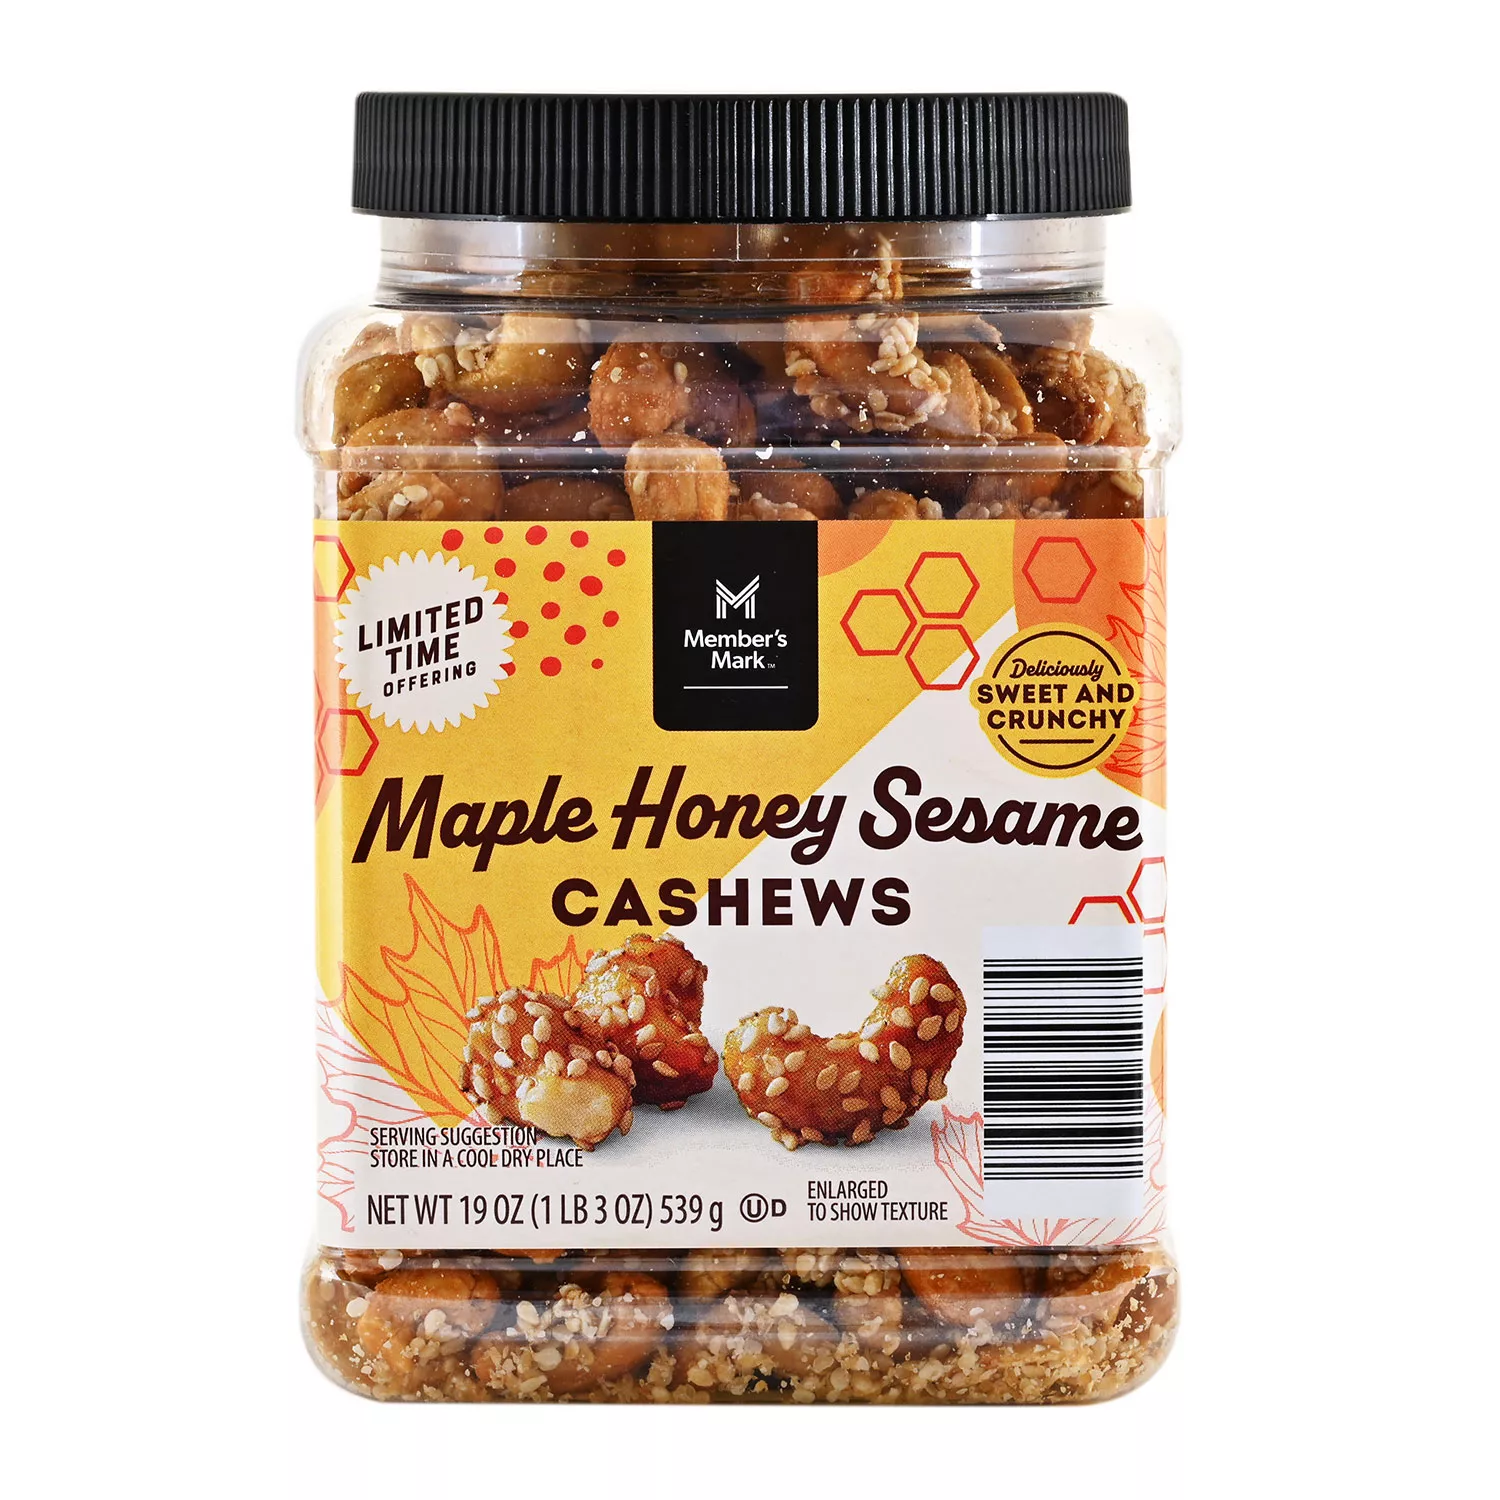 Member’s Mark Maple Honey Sesame Cashews (19 oz.)